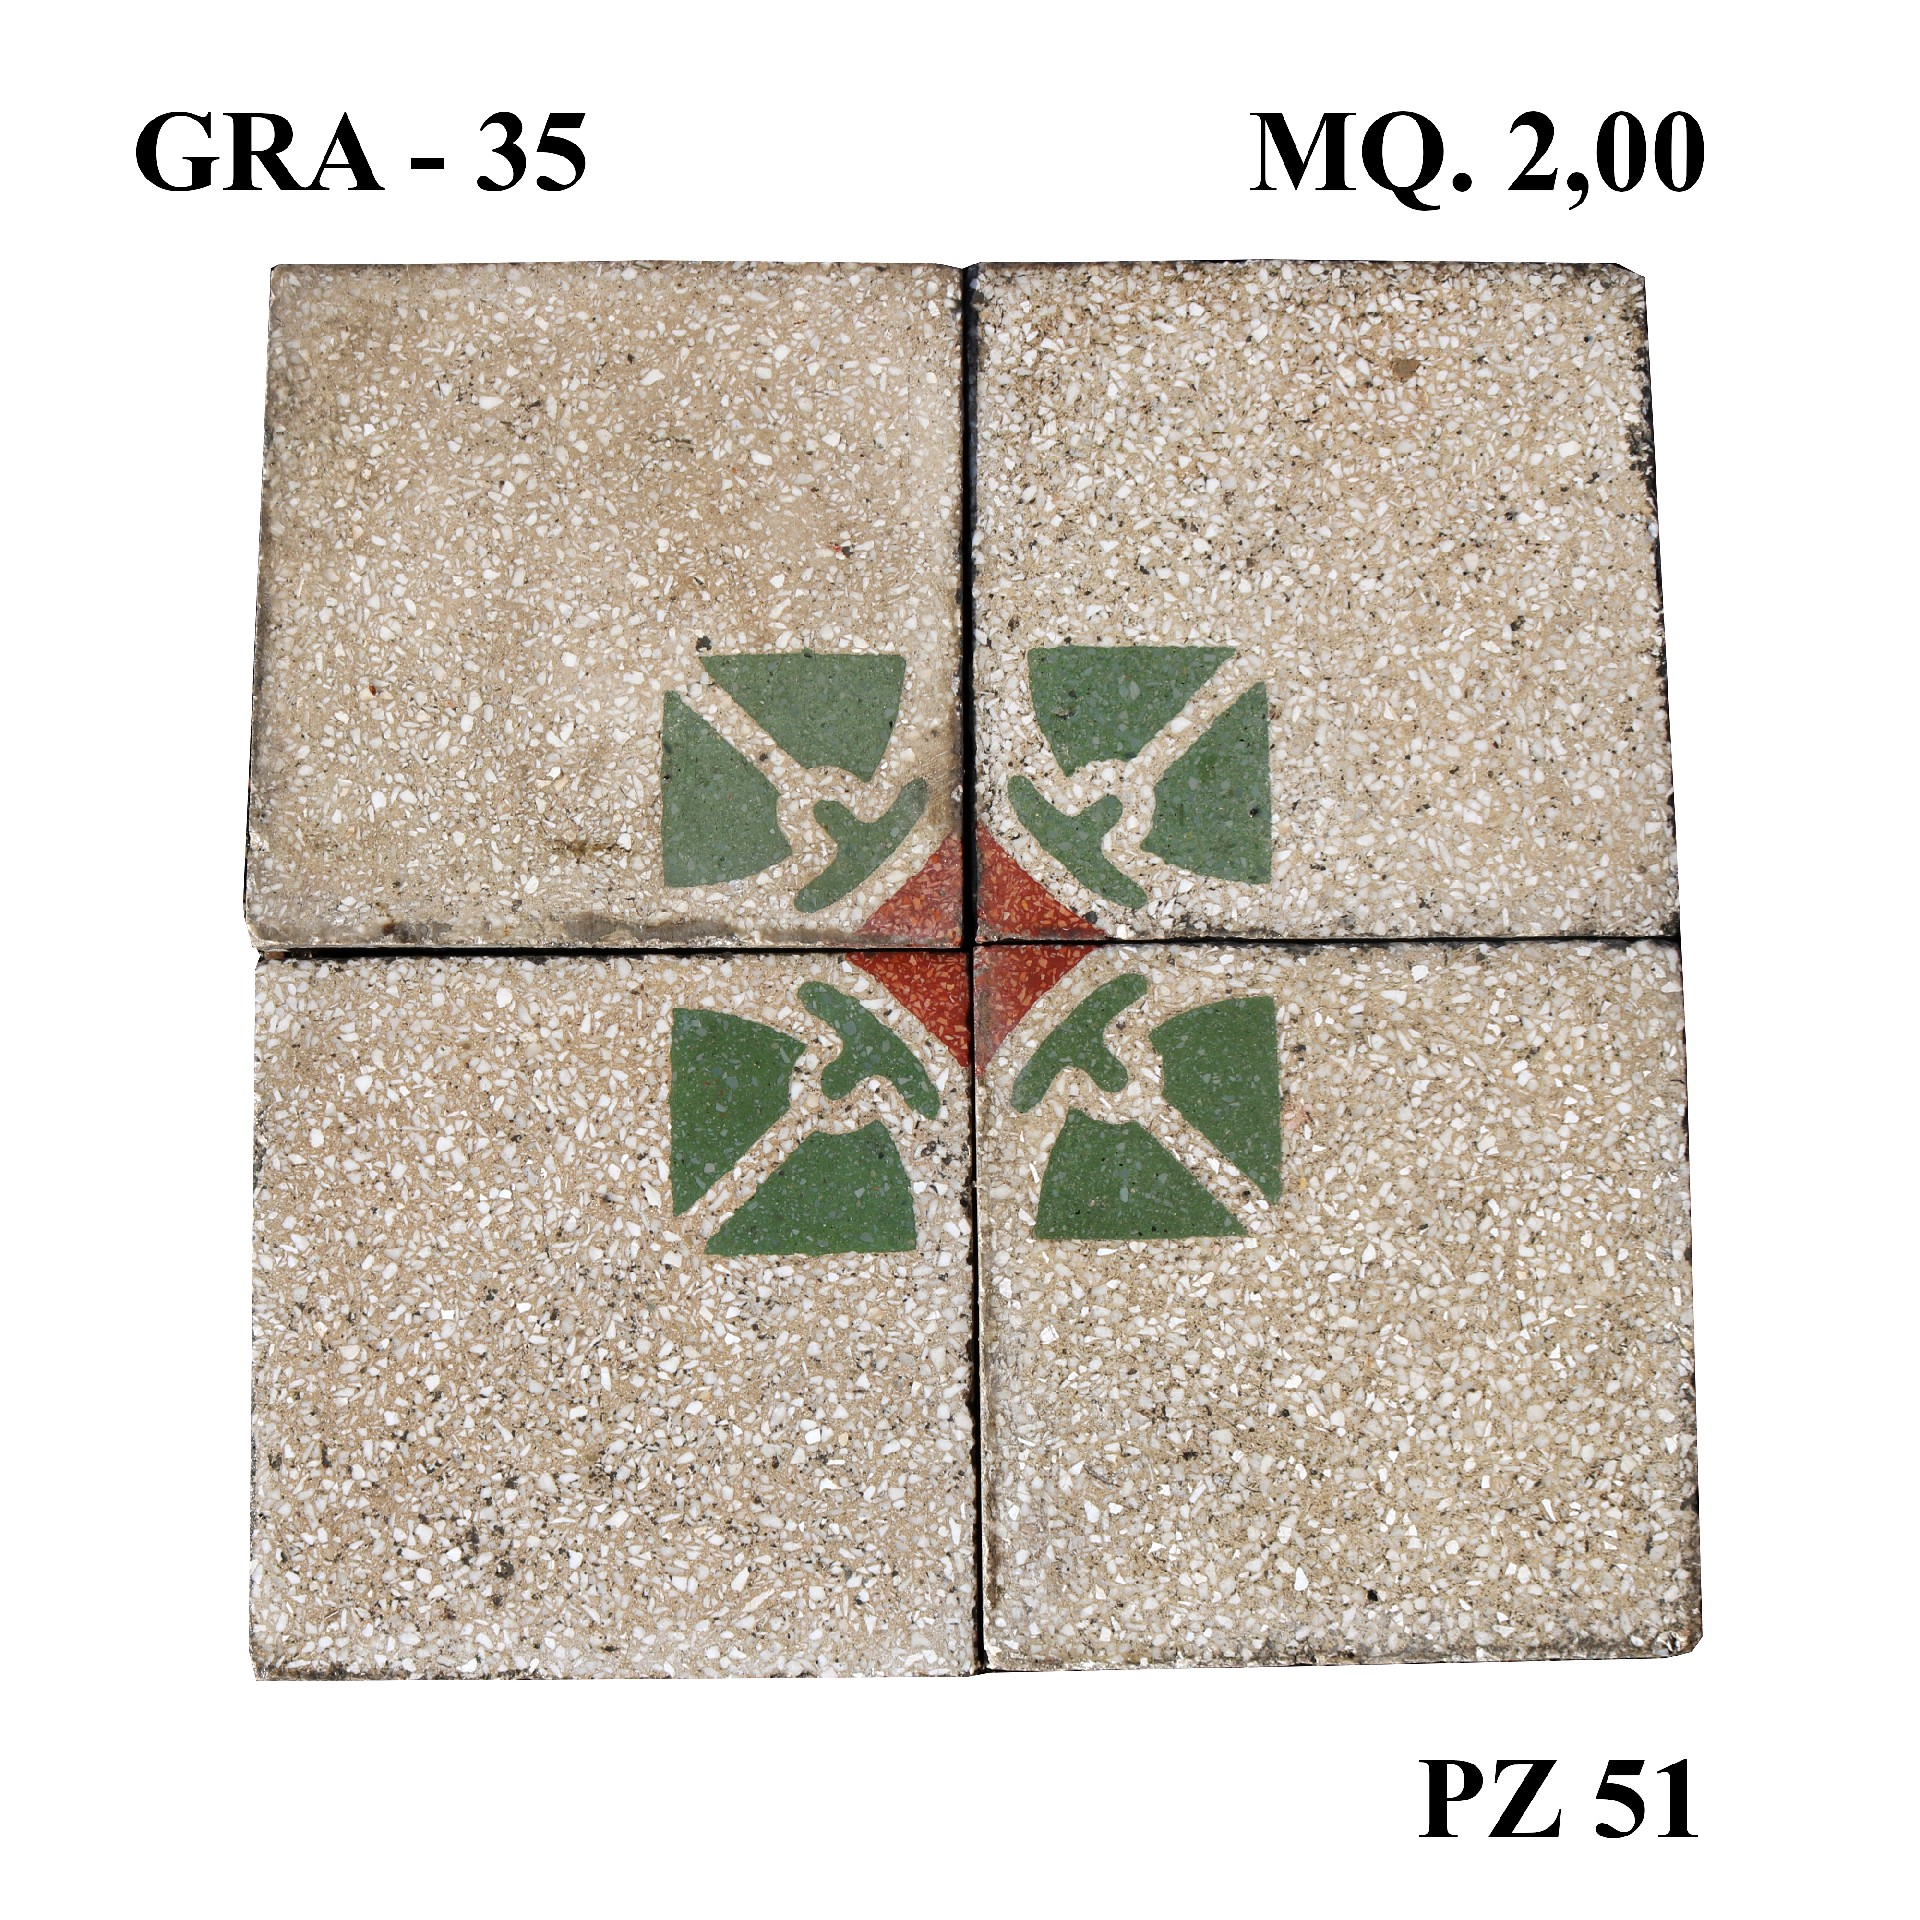 Antica pavimentazione in cementina cm20x20 - Cementine e Graniglie - Pavimentazioni Antiche - Prodotti - Antichità Fiorillo